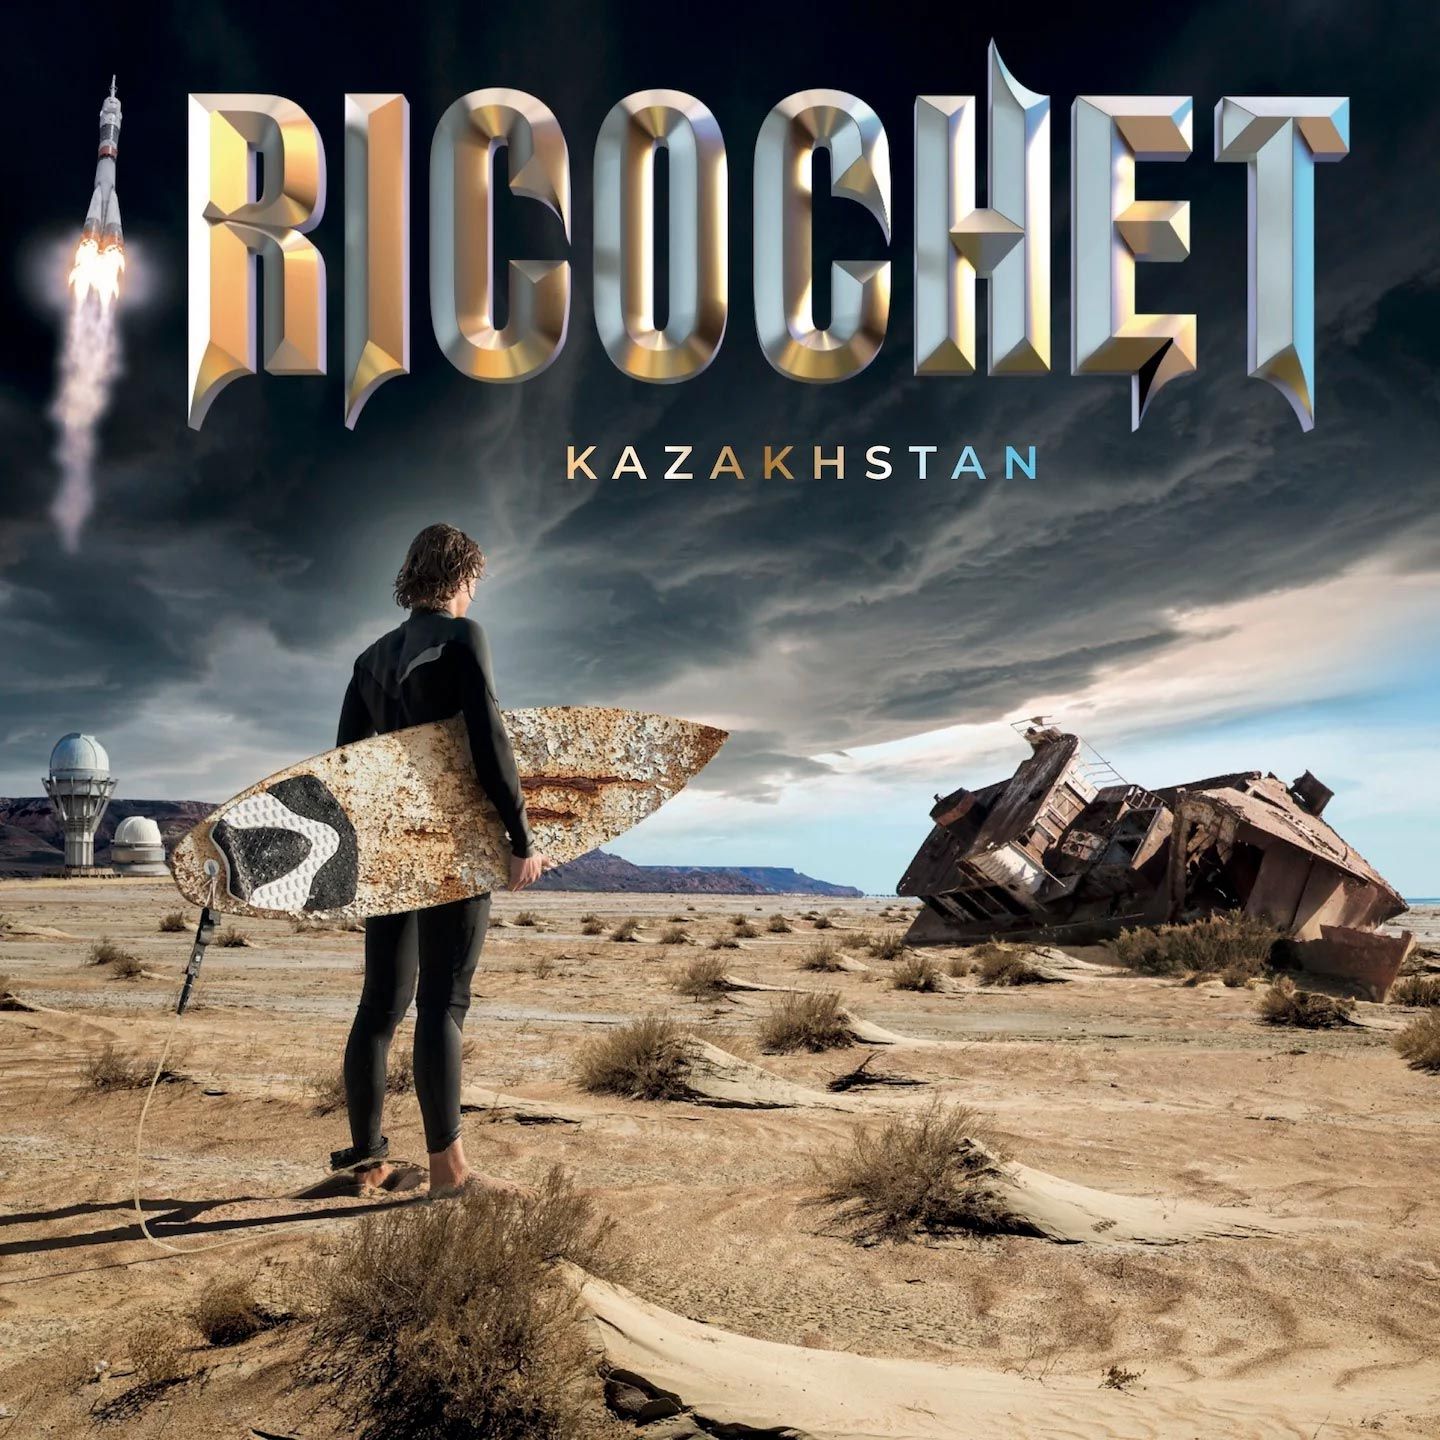 Albumcover Kazakhstan von Ricochet – gestaltet von WINTERPOL